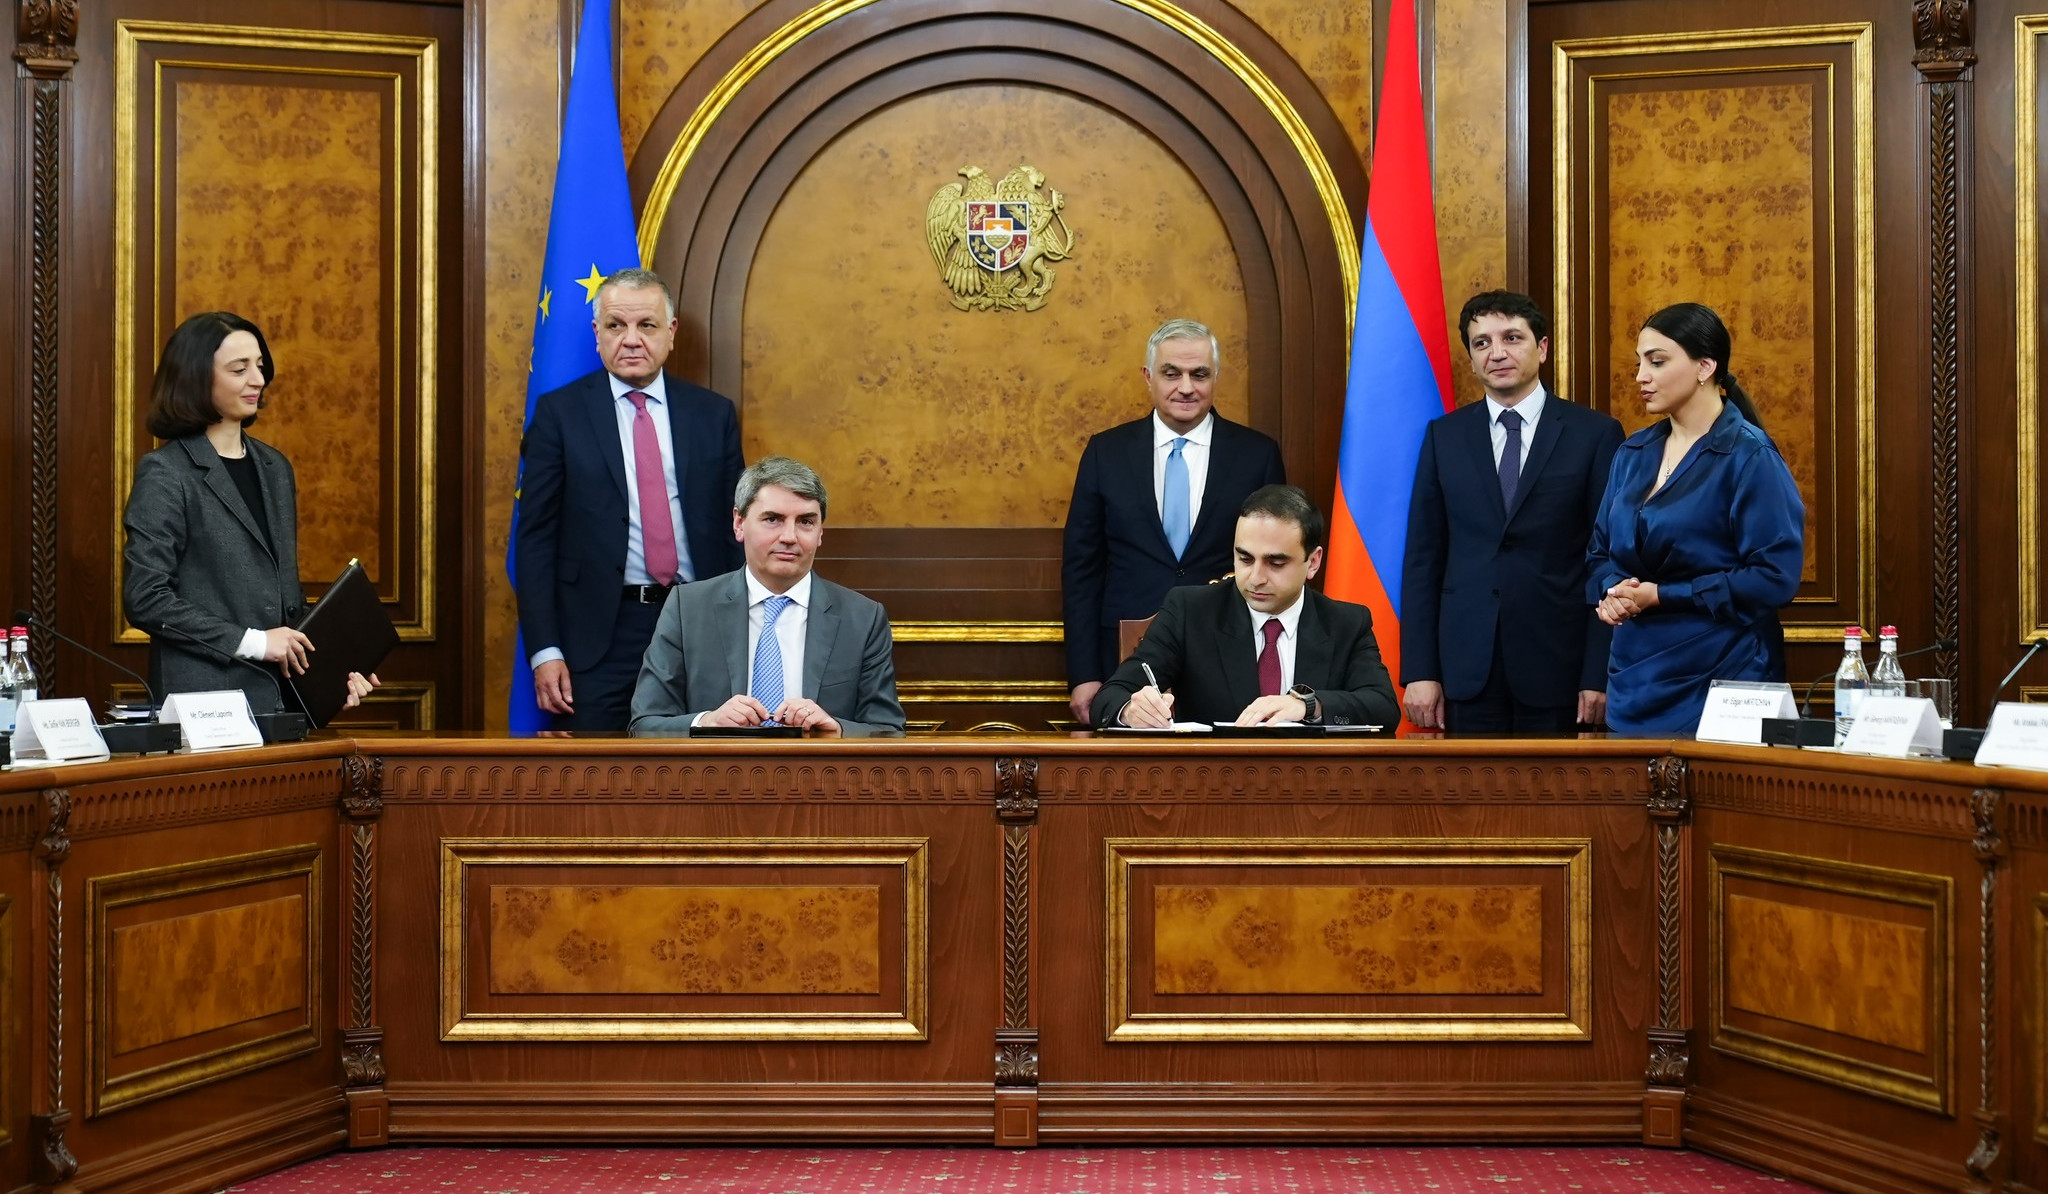 Երևանյան 32 մանկապարտեզներ ու 6 պոլիկլինիկաներ կհիմնանորոգվեն. ստորագրվել են համաձայնագրեր